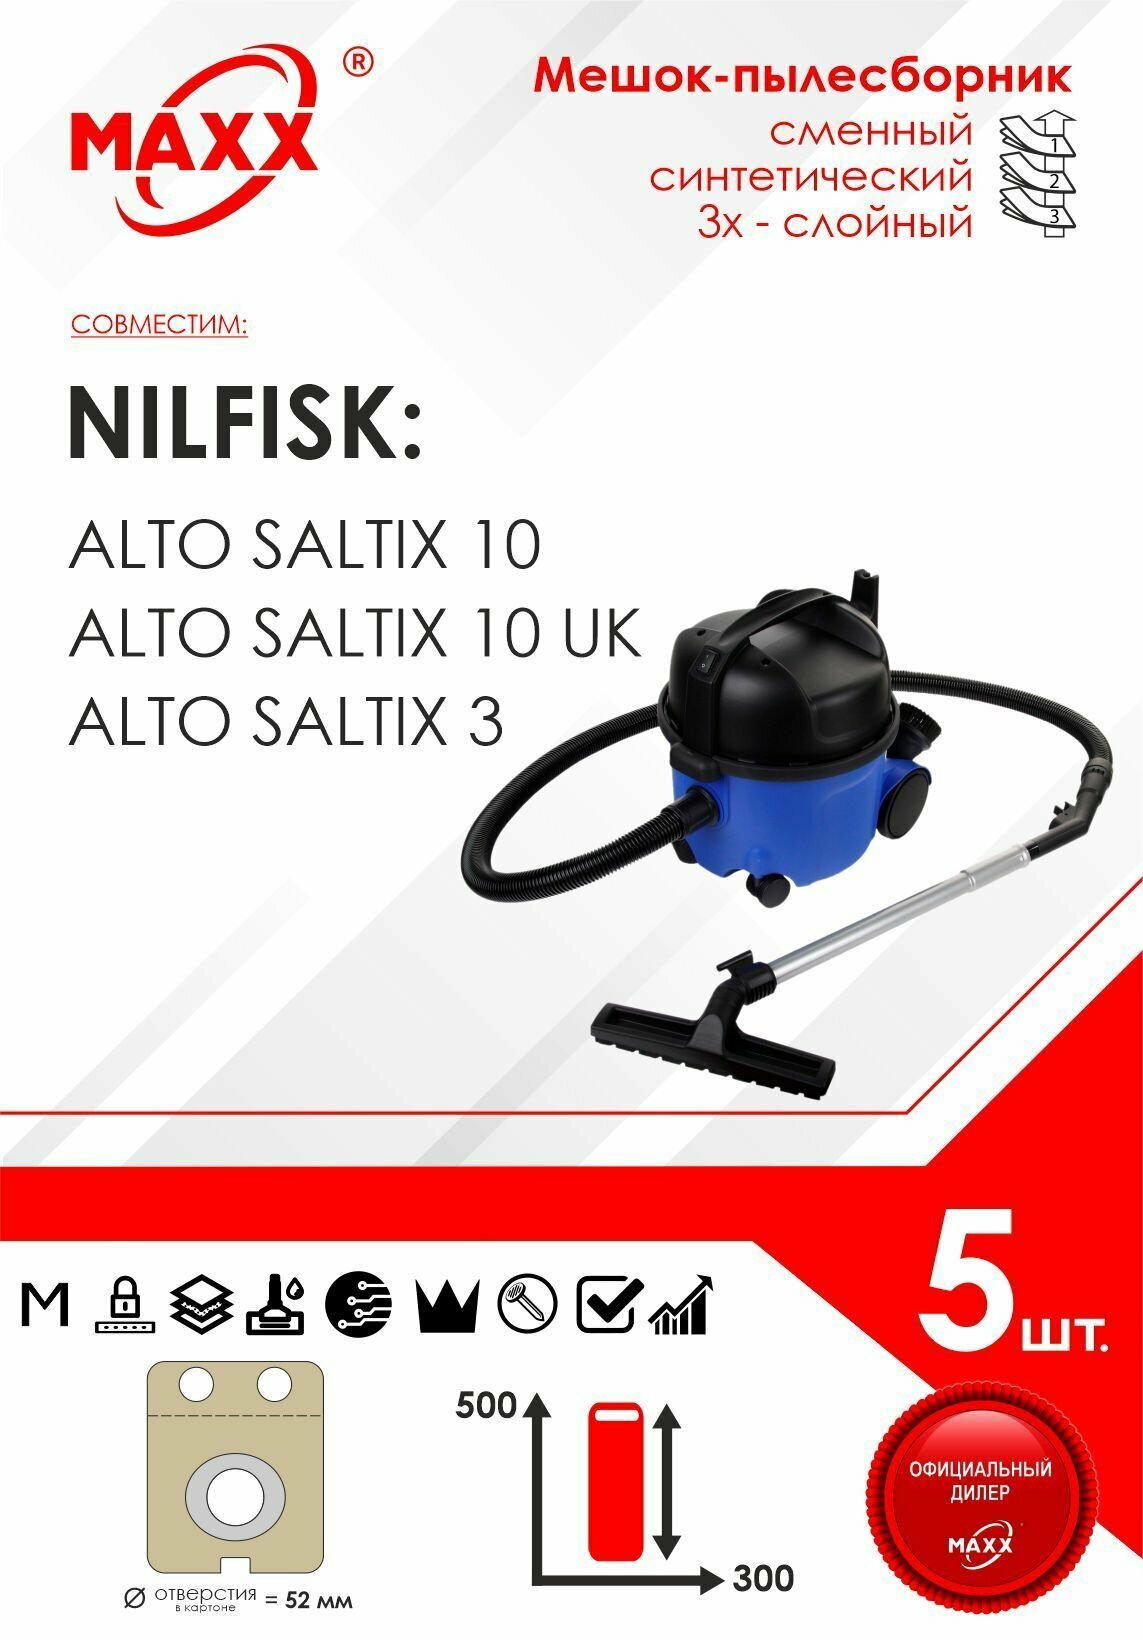 Мешок - пылесборник 5 шт. для пылесоса Nilfisk Alto Saltix 3, Nilfisk Alto Saltix 10